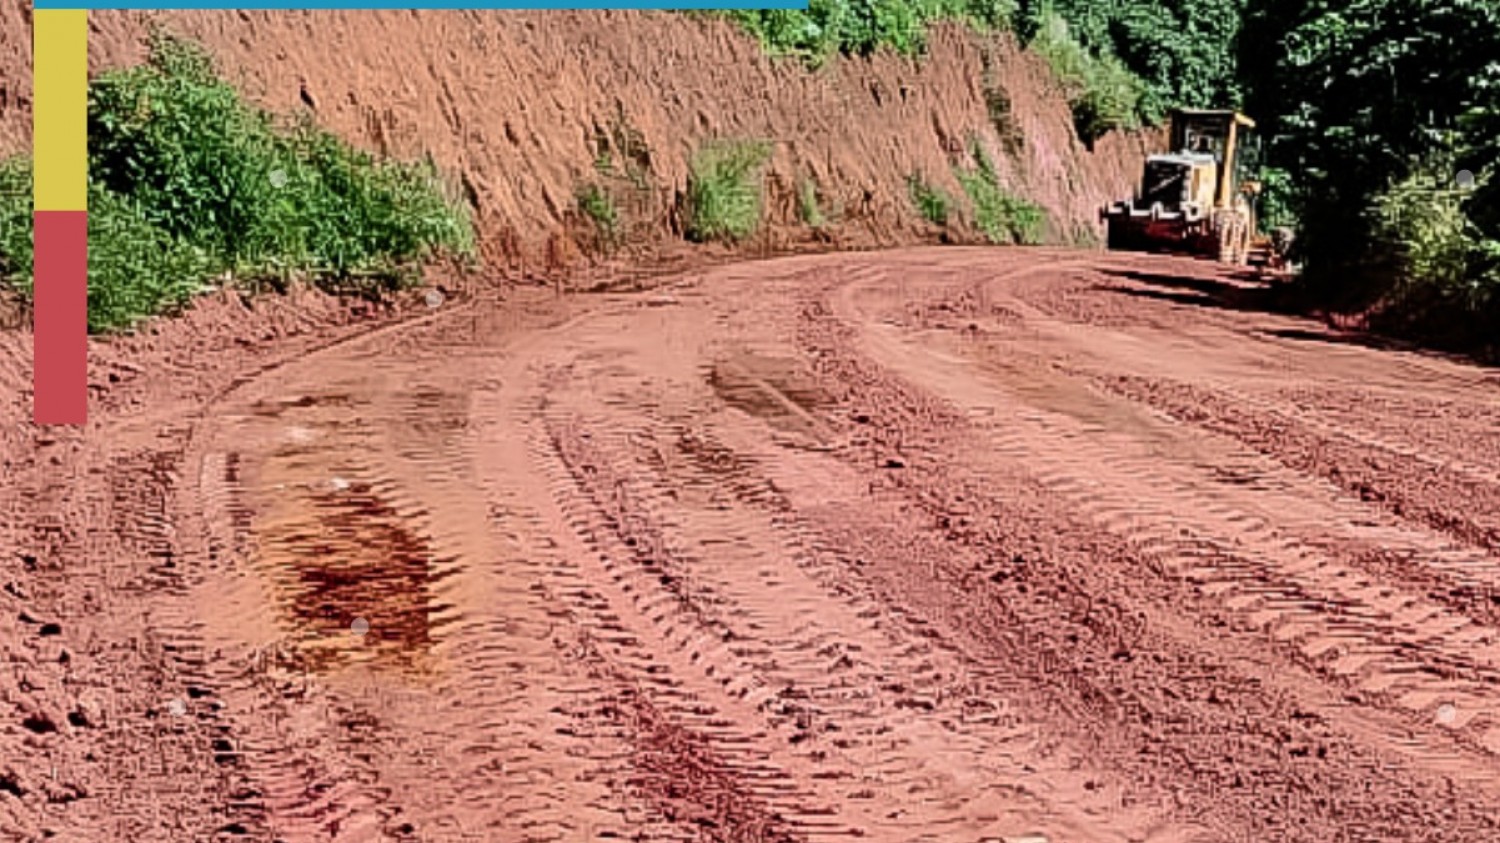 Prefeitura realiza desobstrução de boeiro, ensaibramento e aterro nas estradas do Rio Claro.